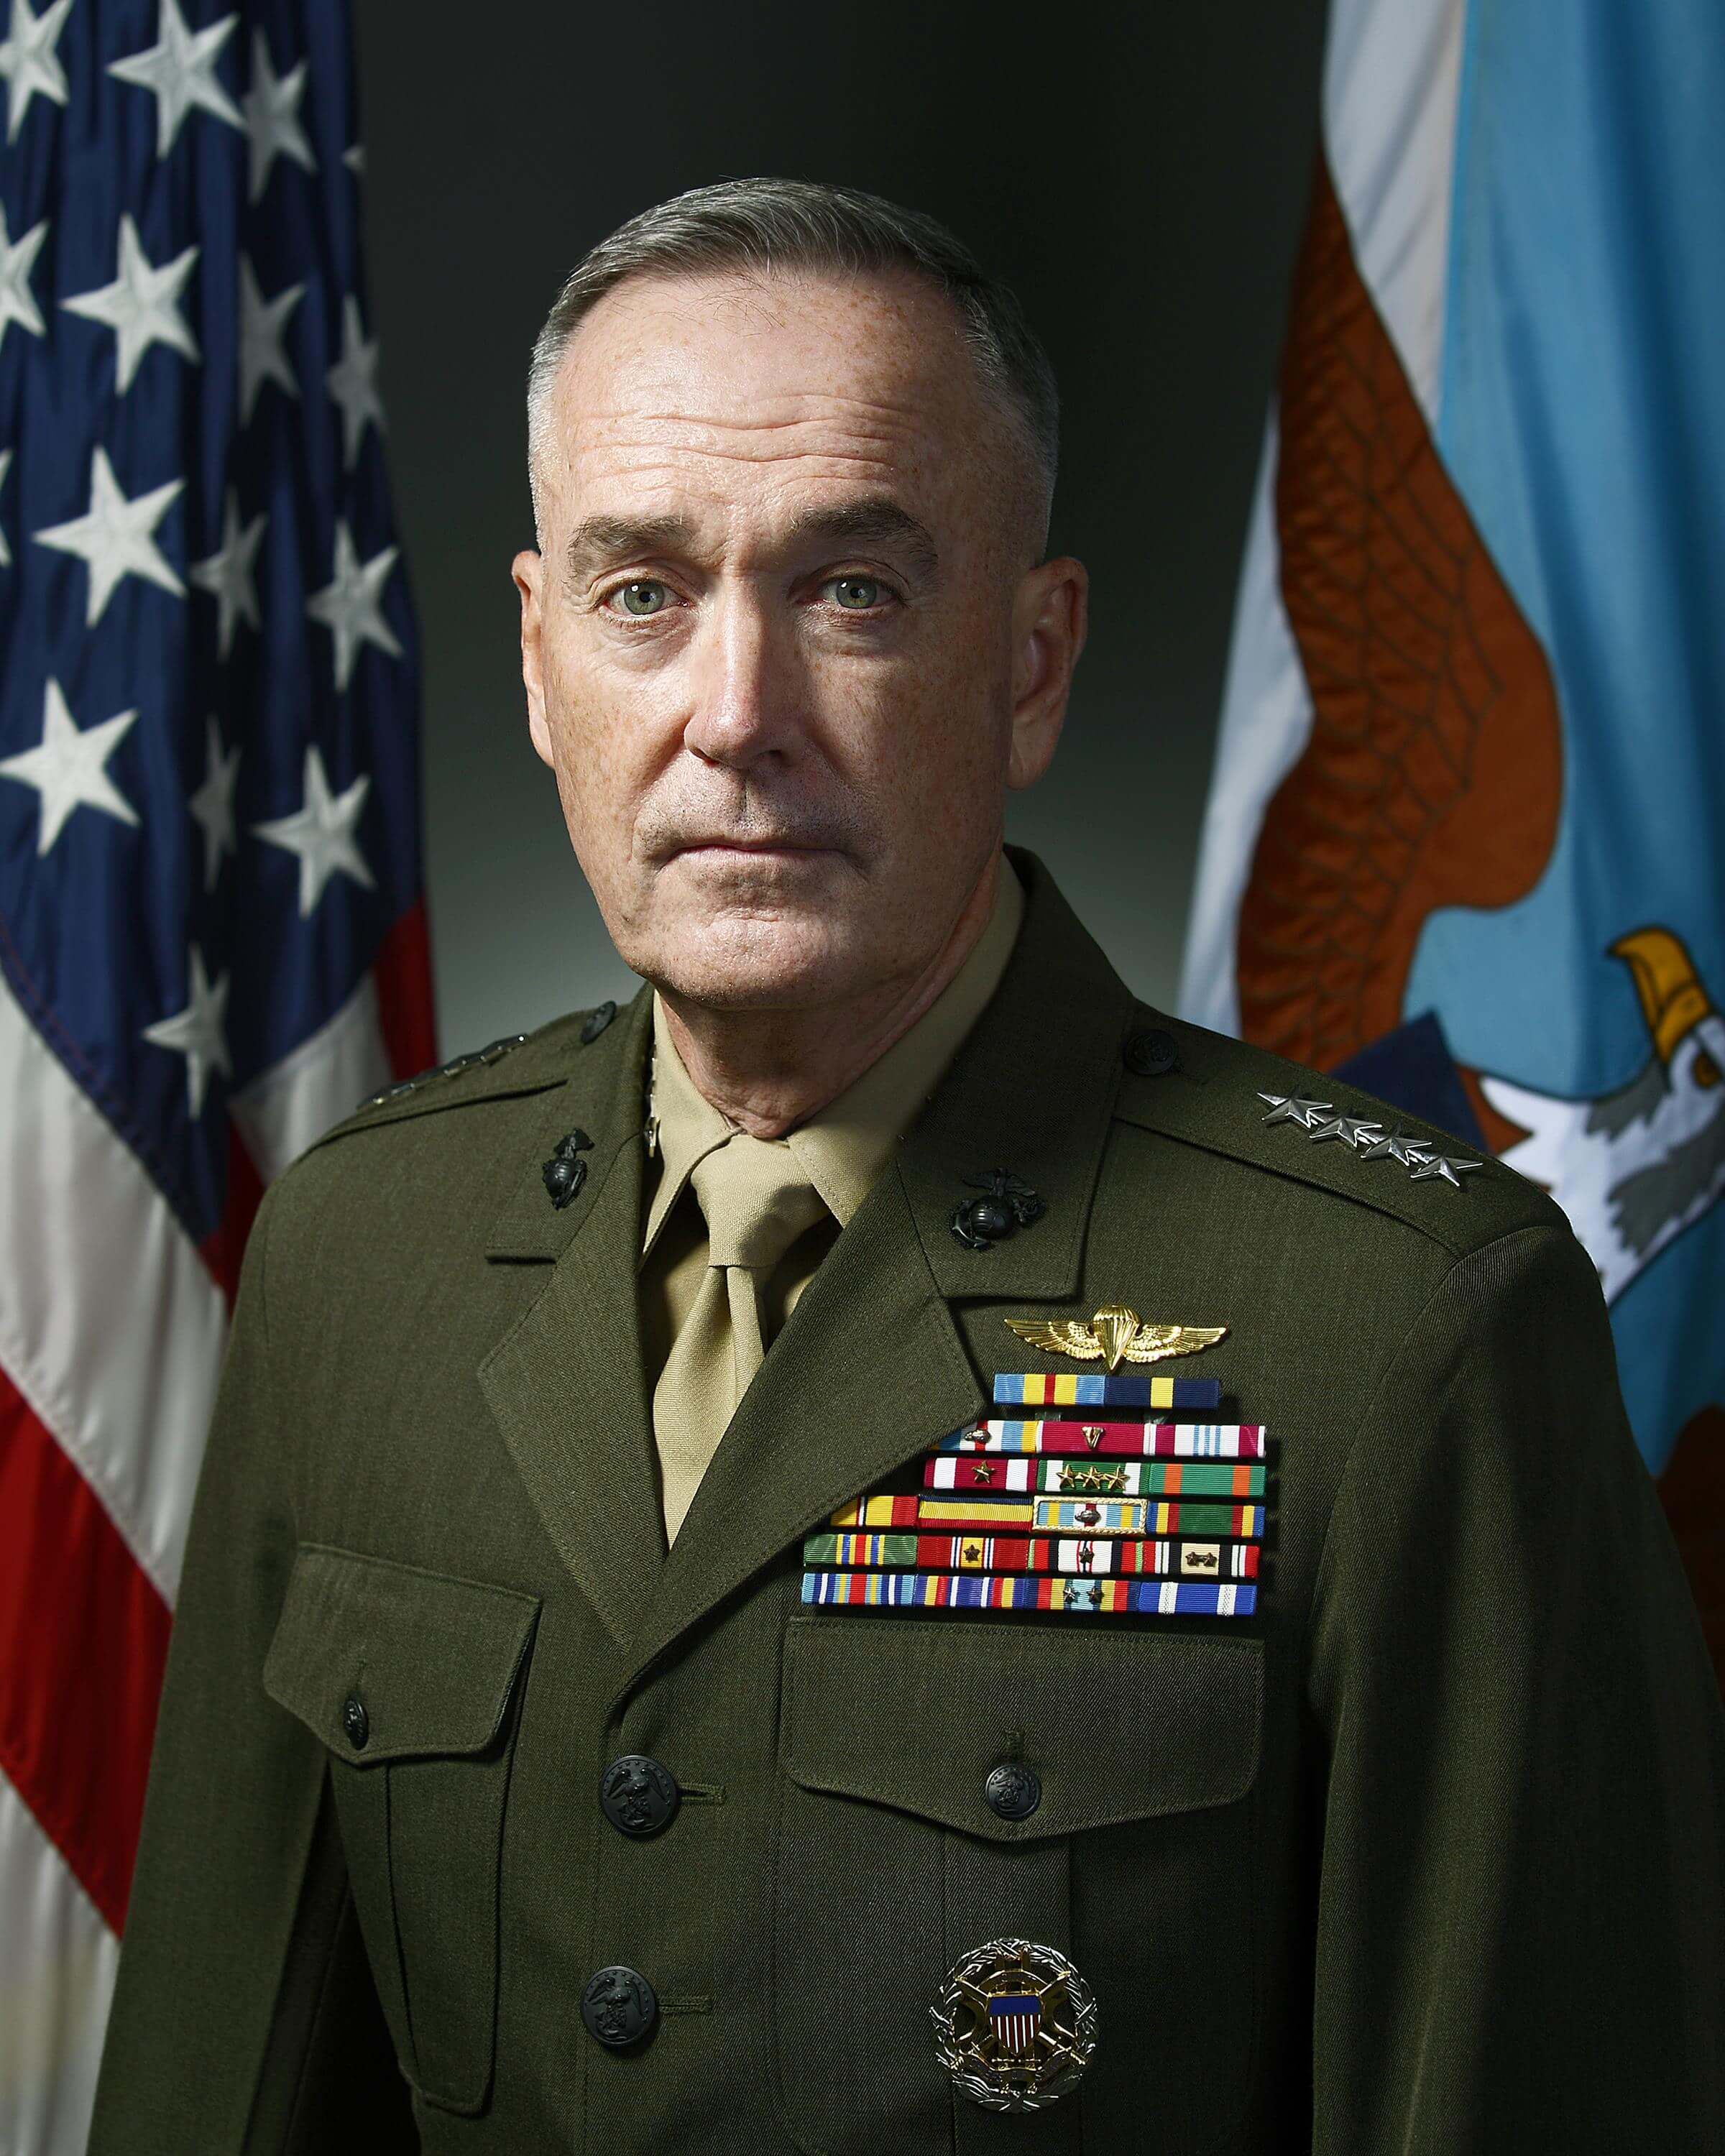 Gen. Dunford